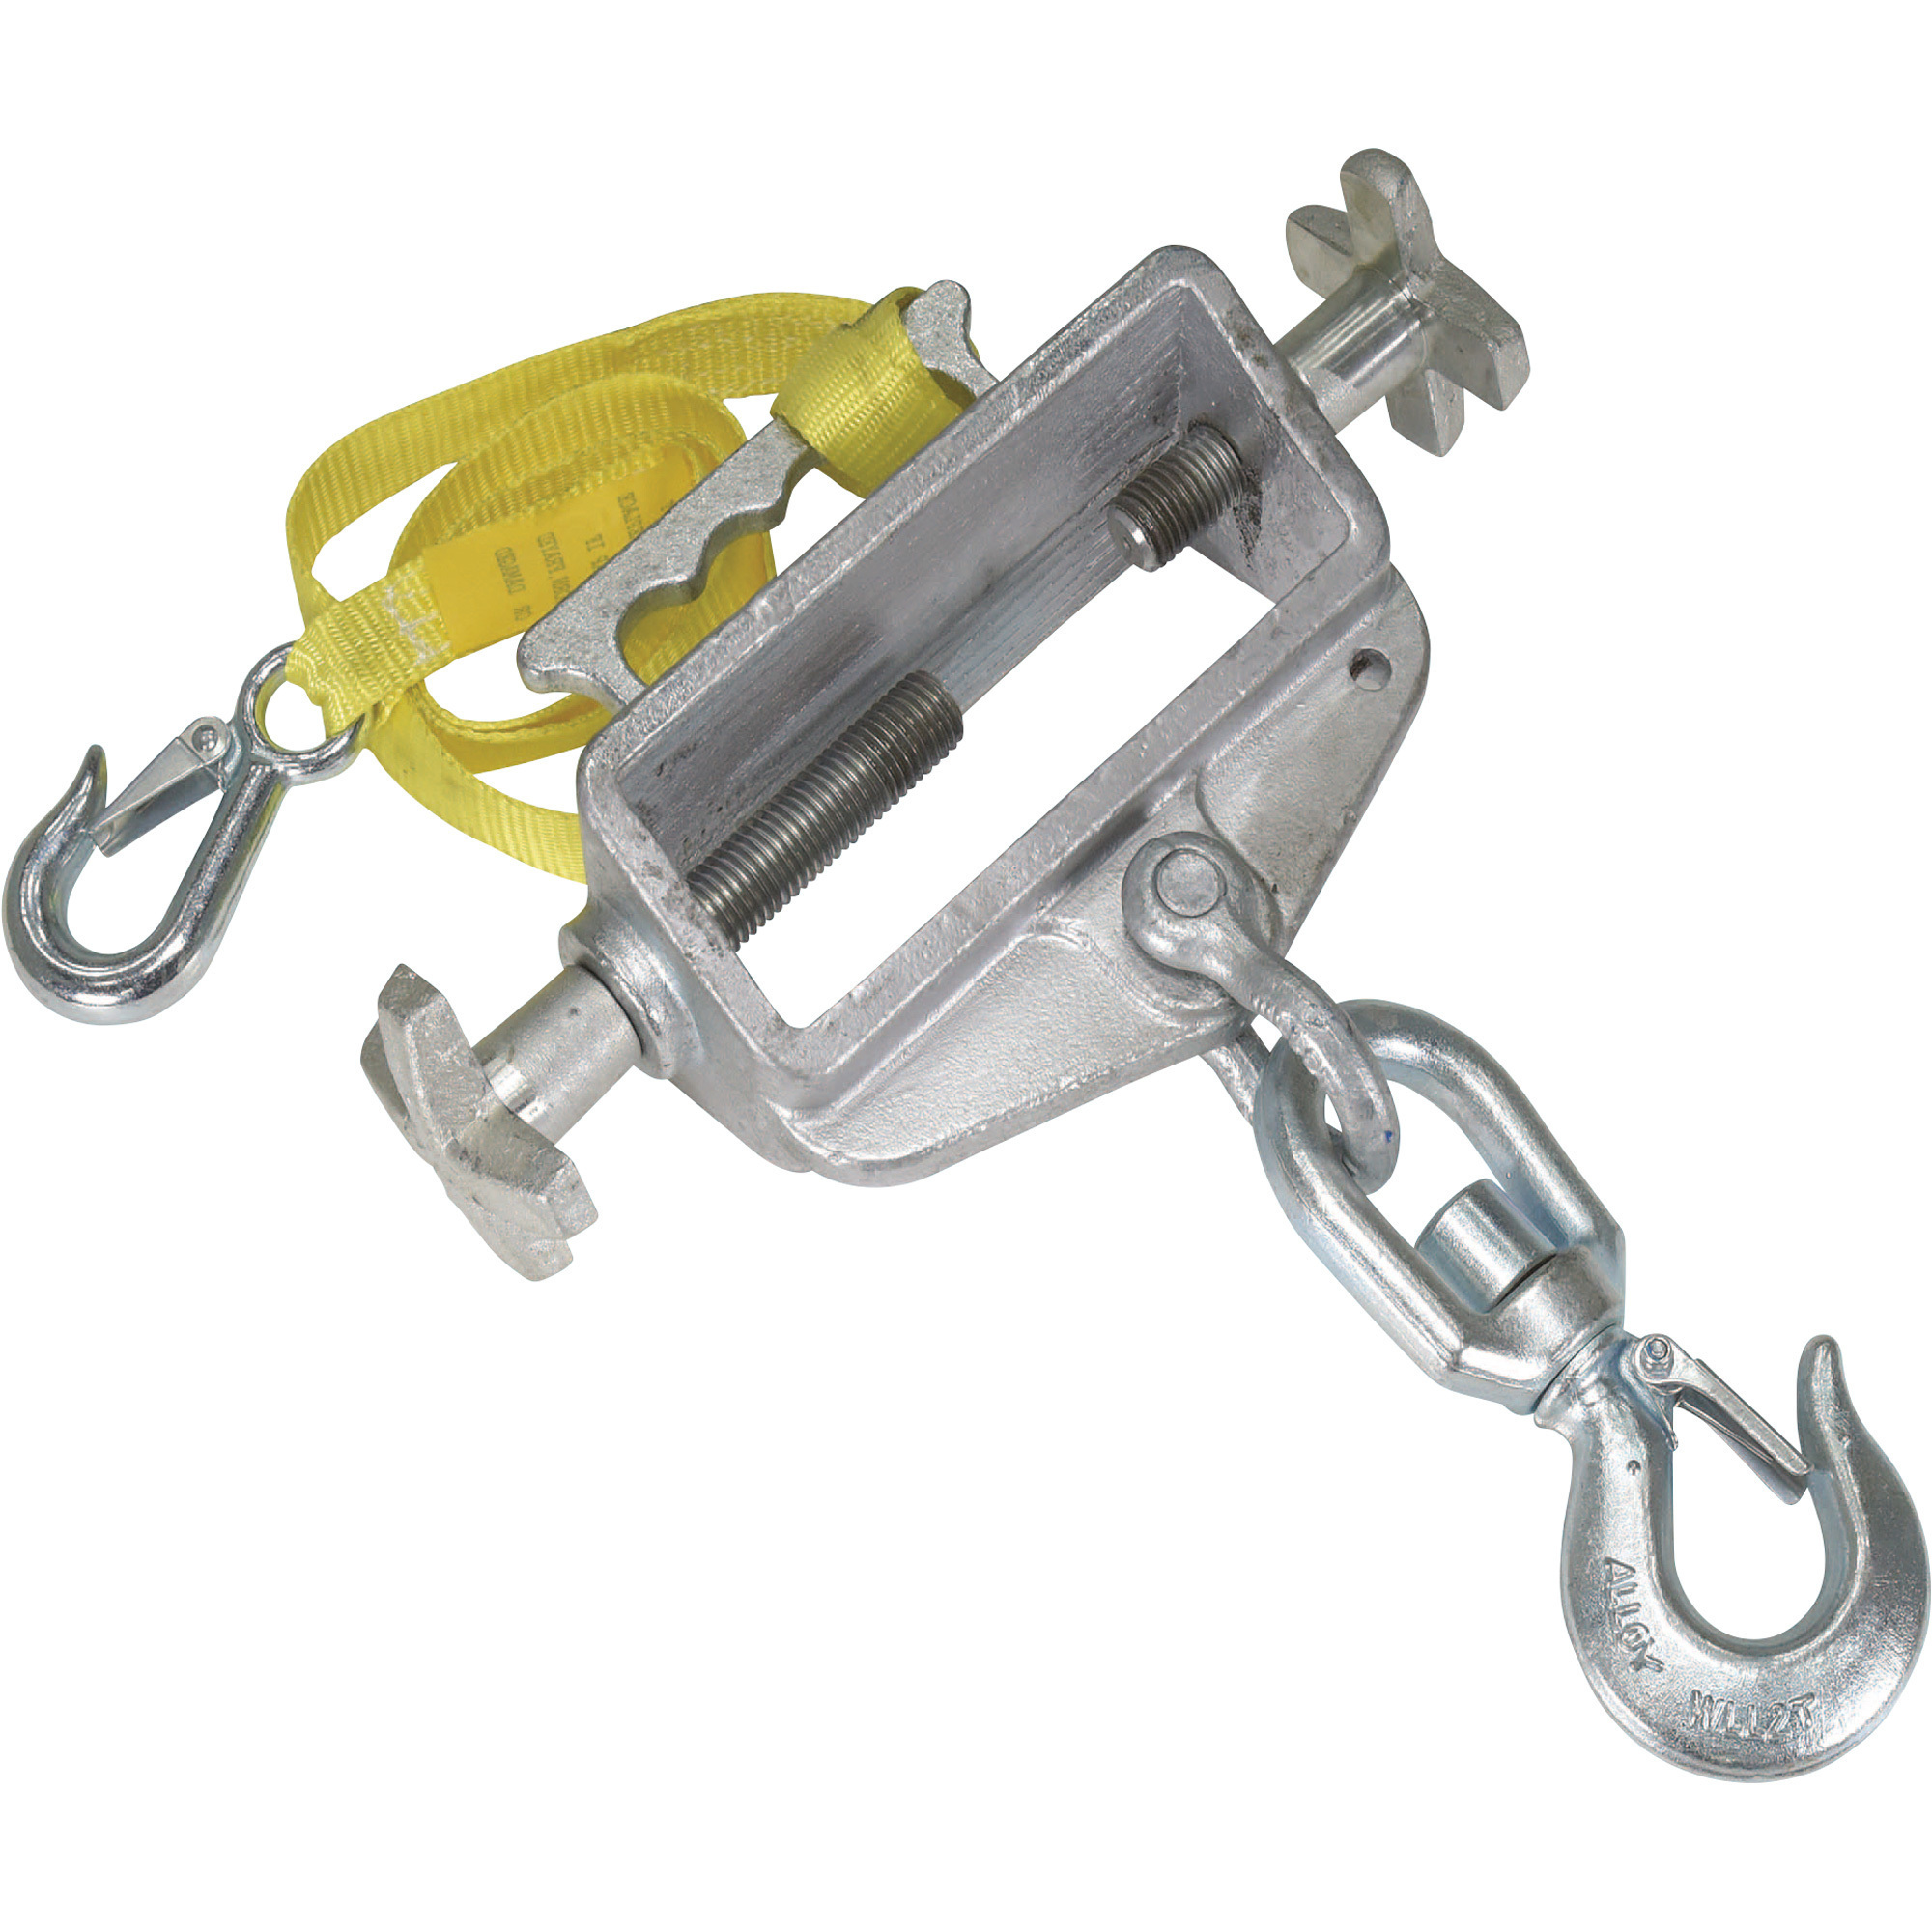 Vestil Hoisting Hook, 4,000-Lb. Capacity, Swivel Hook with Latch, Model S-FORK-4/6-SL